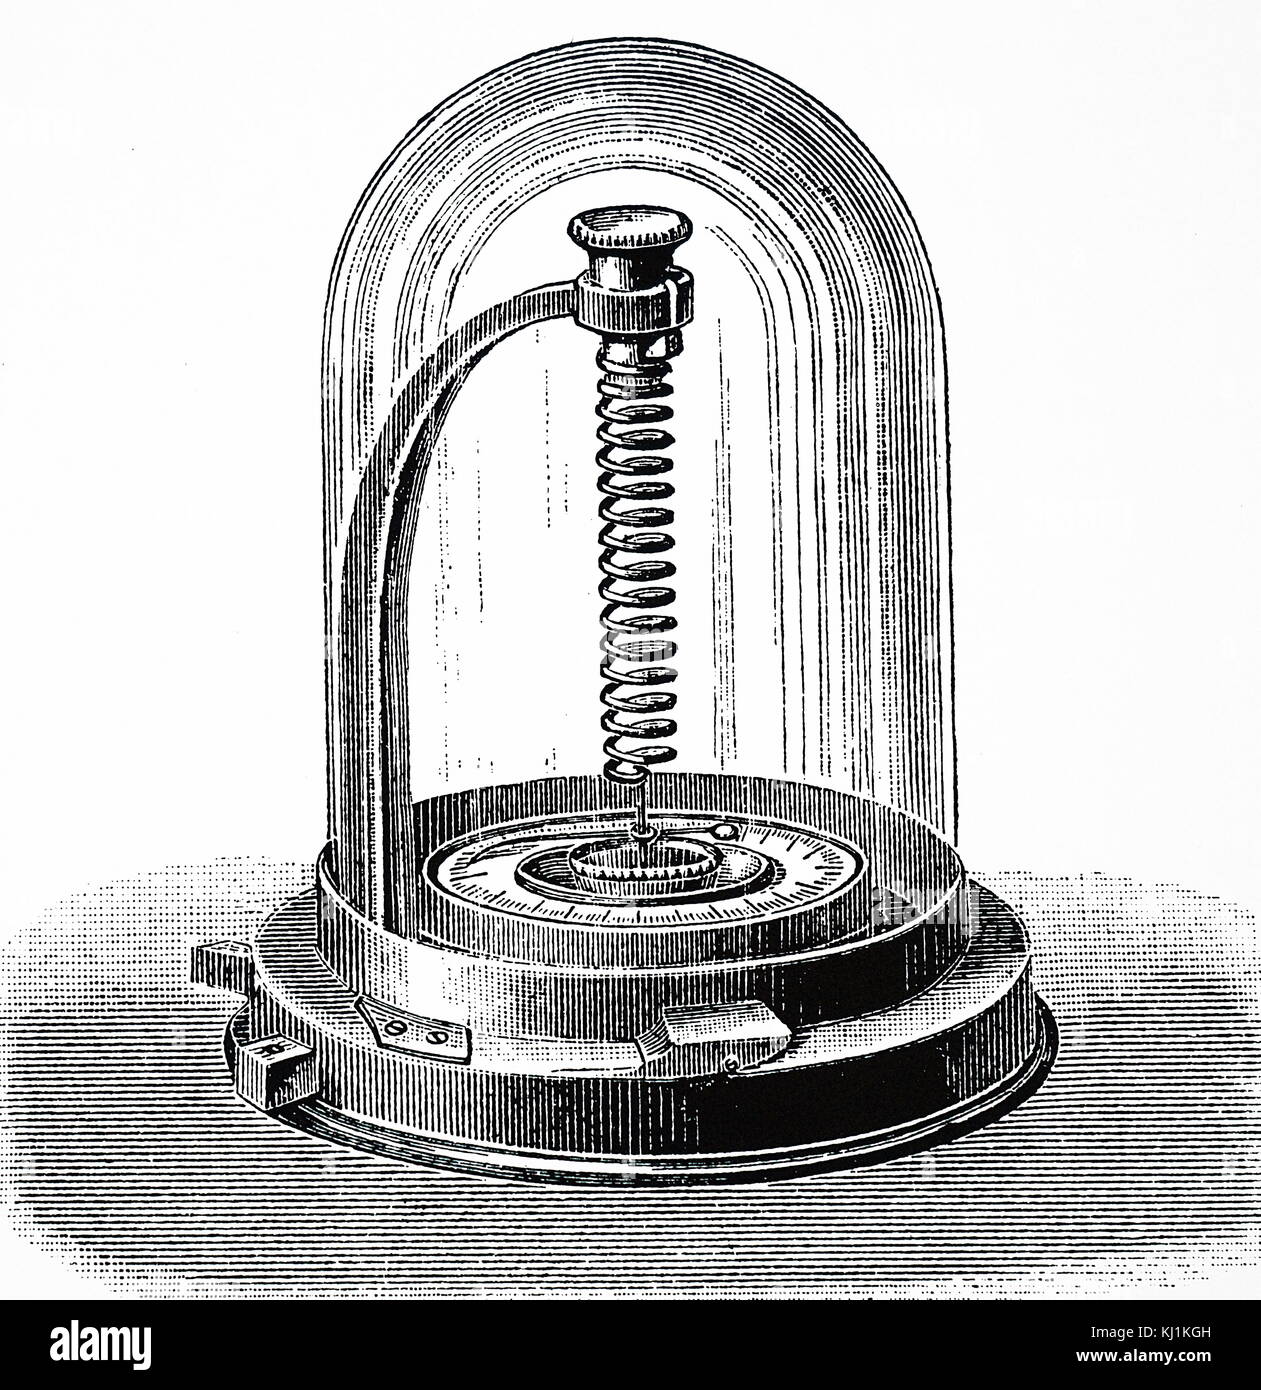 Gravur, eine Breguet Thermometer. Eine Breguet Thermometer, auch eine Spirale Thermometer, ist eine Art von Thermometer, der Ausbau von Metall verwendet unter Hitze eine Messung sensibler zu produzieren, und mit einem höheren Bereich, als sowohl Quecksilber und Thermometer. Vom 19. Jahrhundert Stockfoto